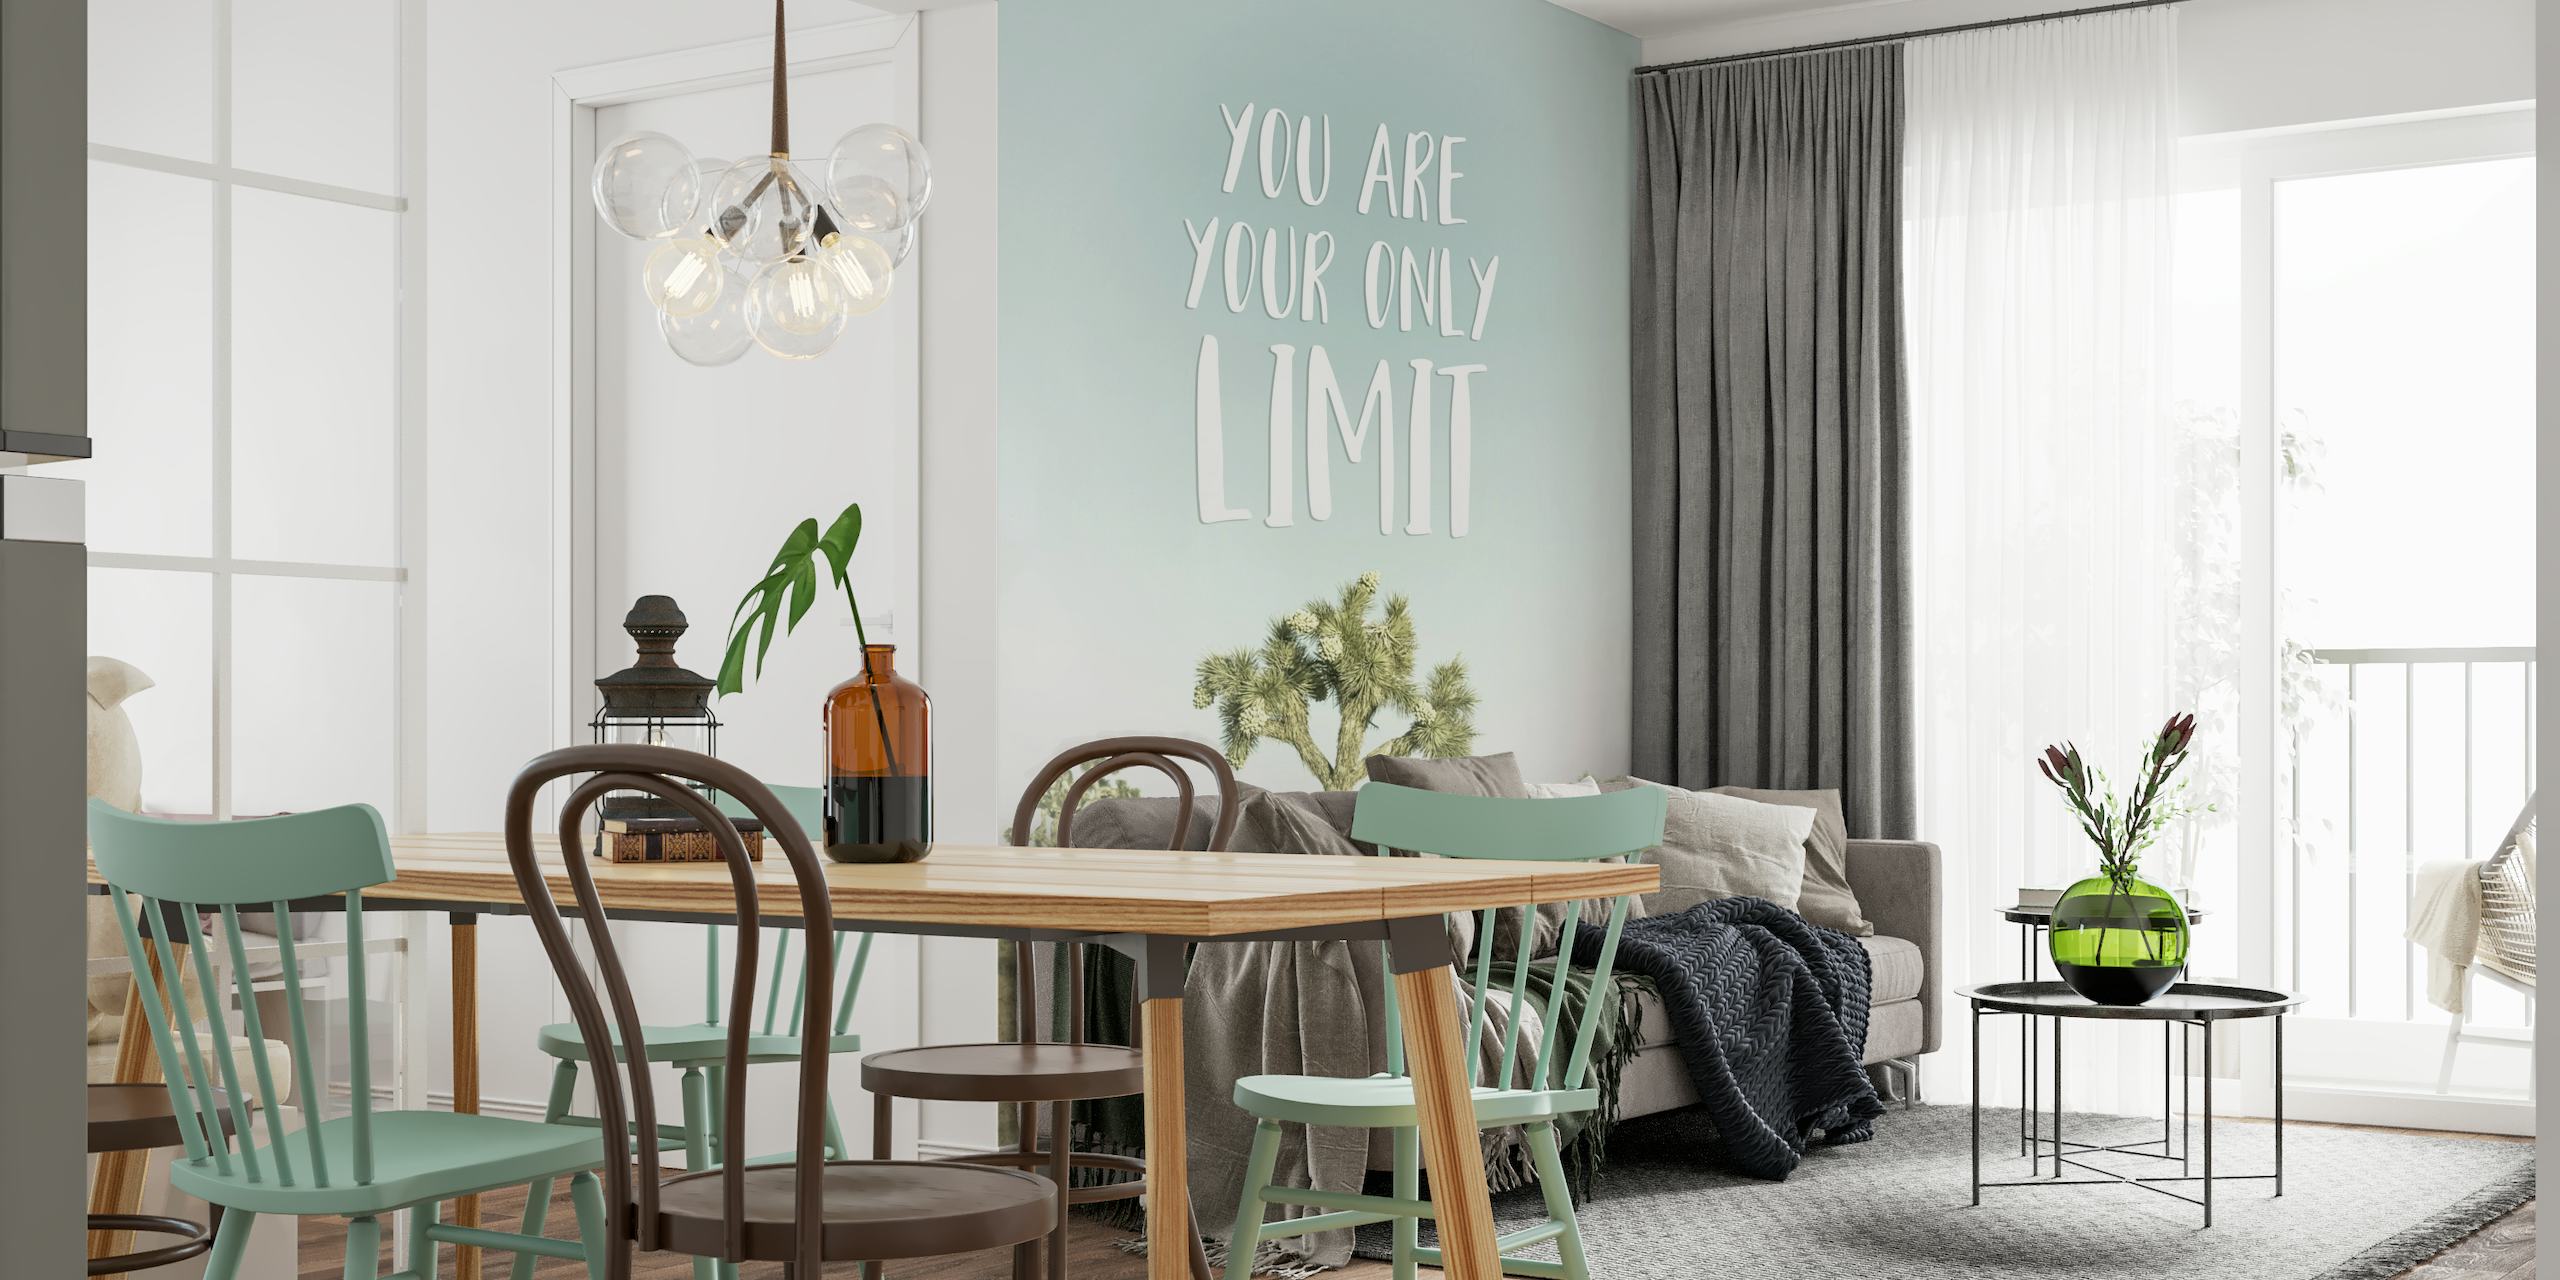 Inspiroiva puumaisema seinämaalaus "Sinä olet ainoa rajasi" -tekstillä